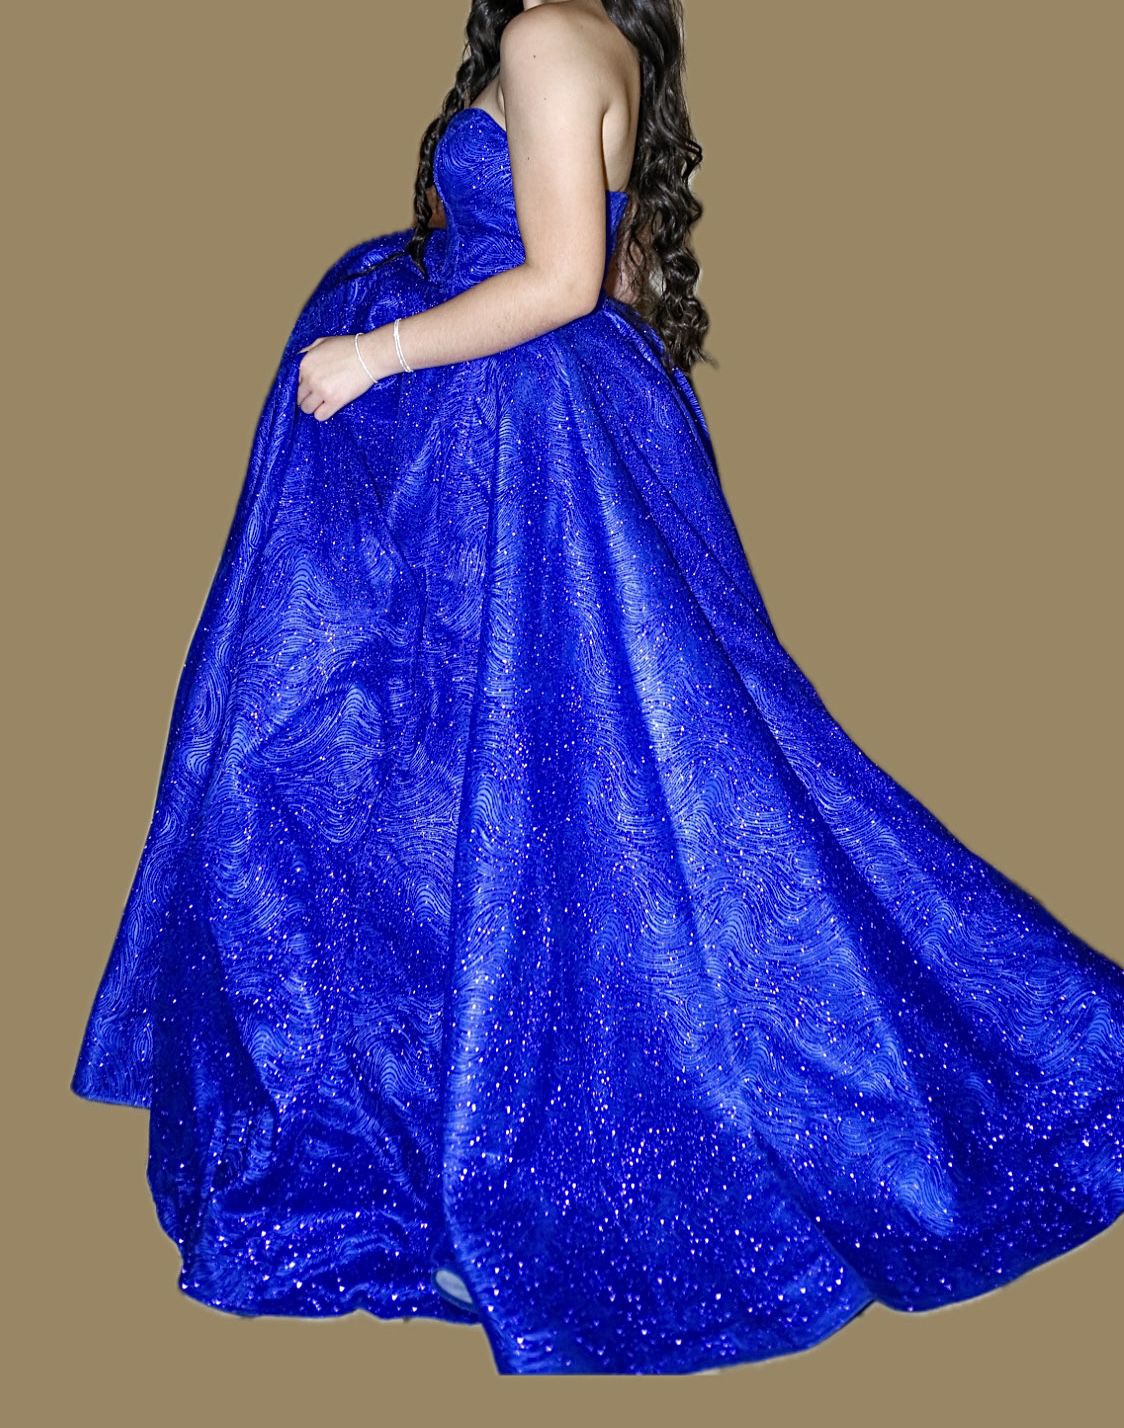 Women’s Camille LA VIE Royal Blue Long Dress Size 2